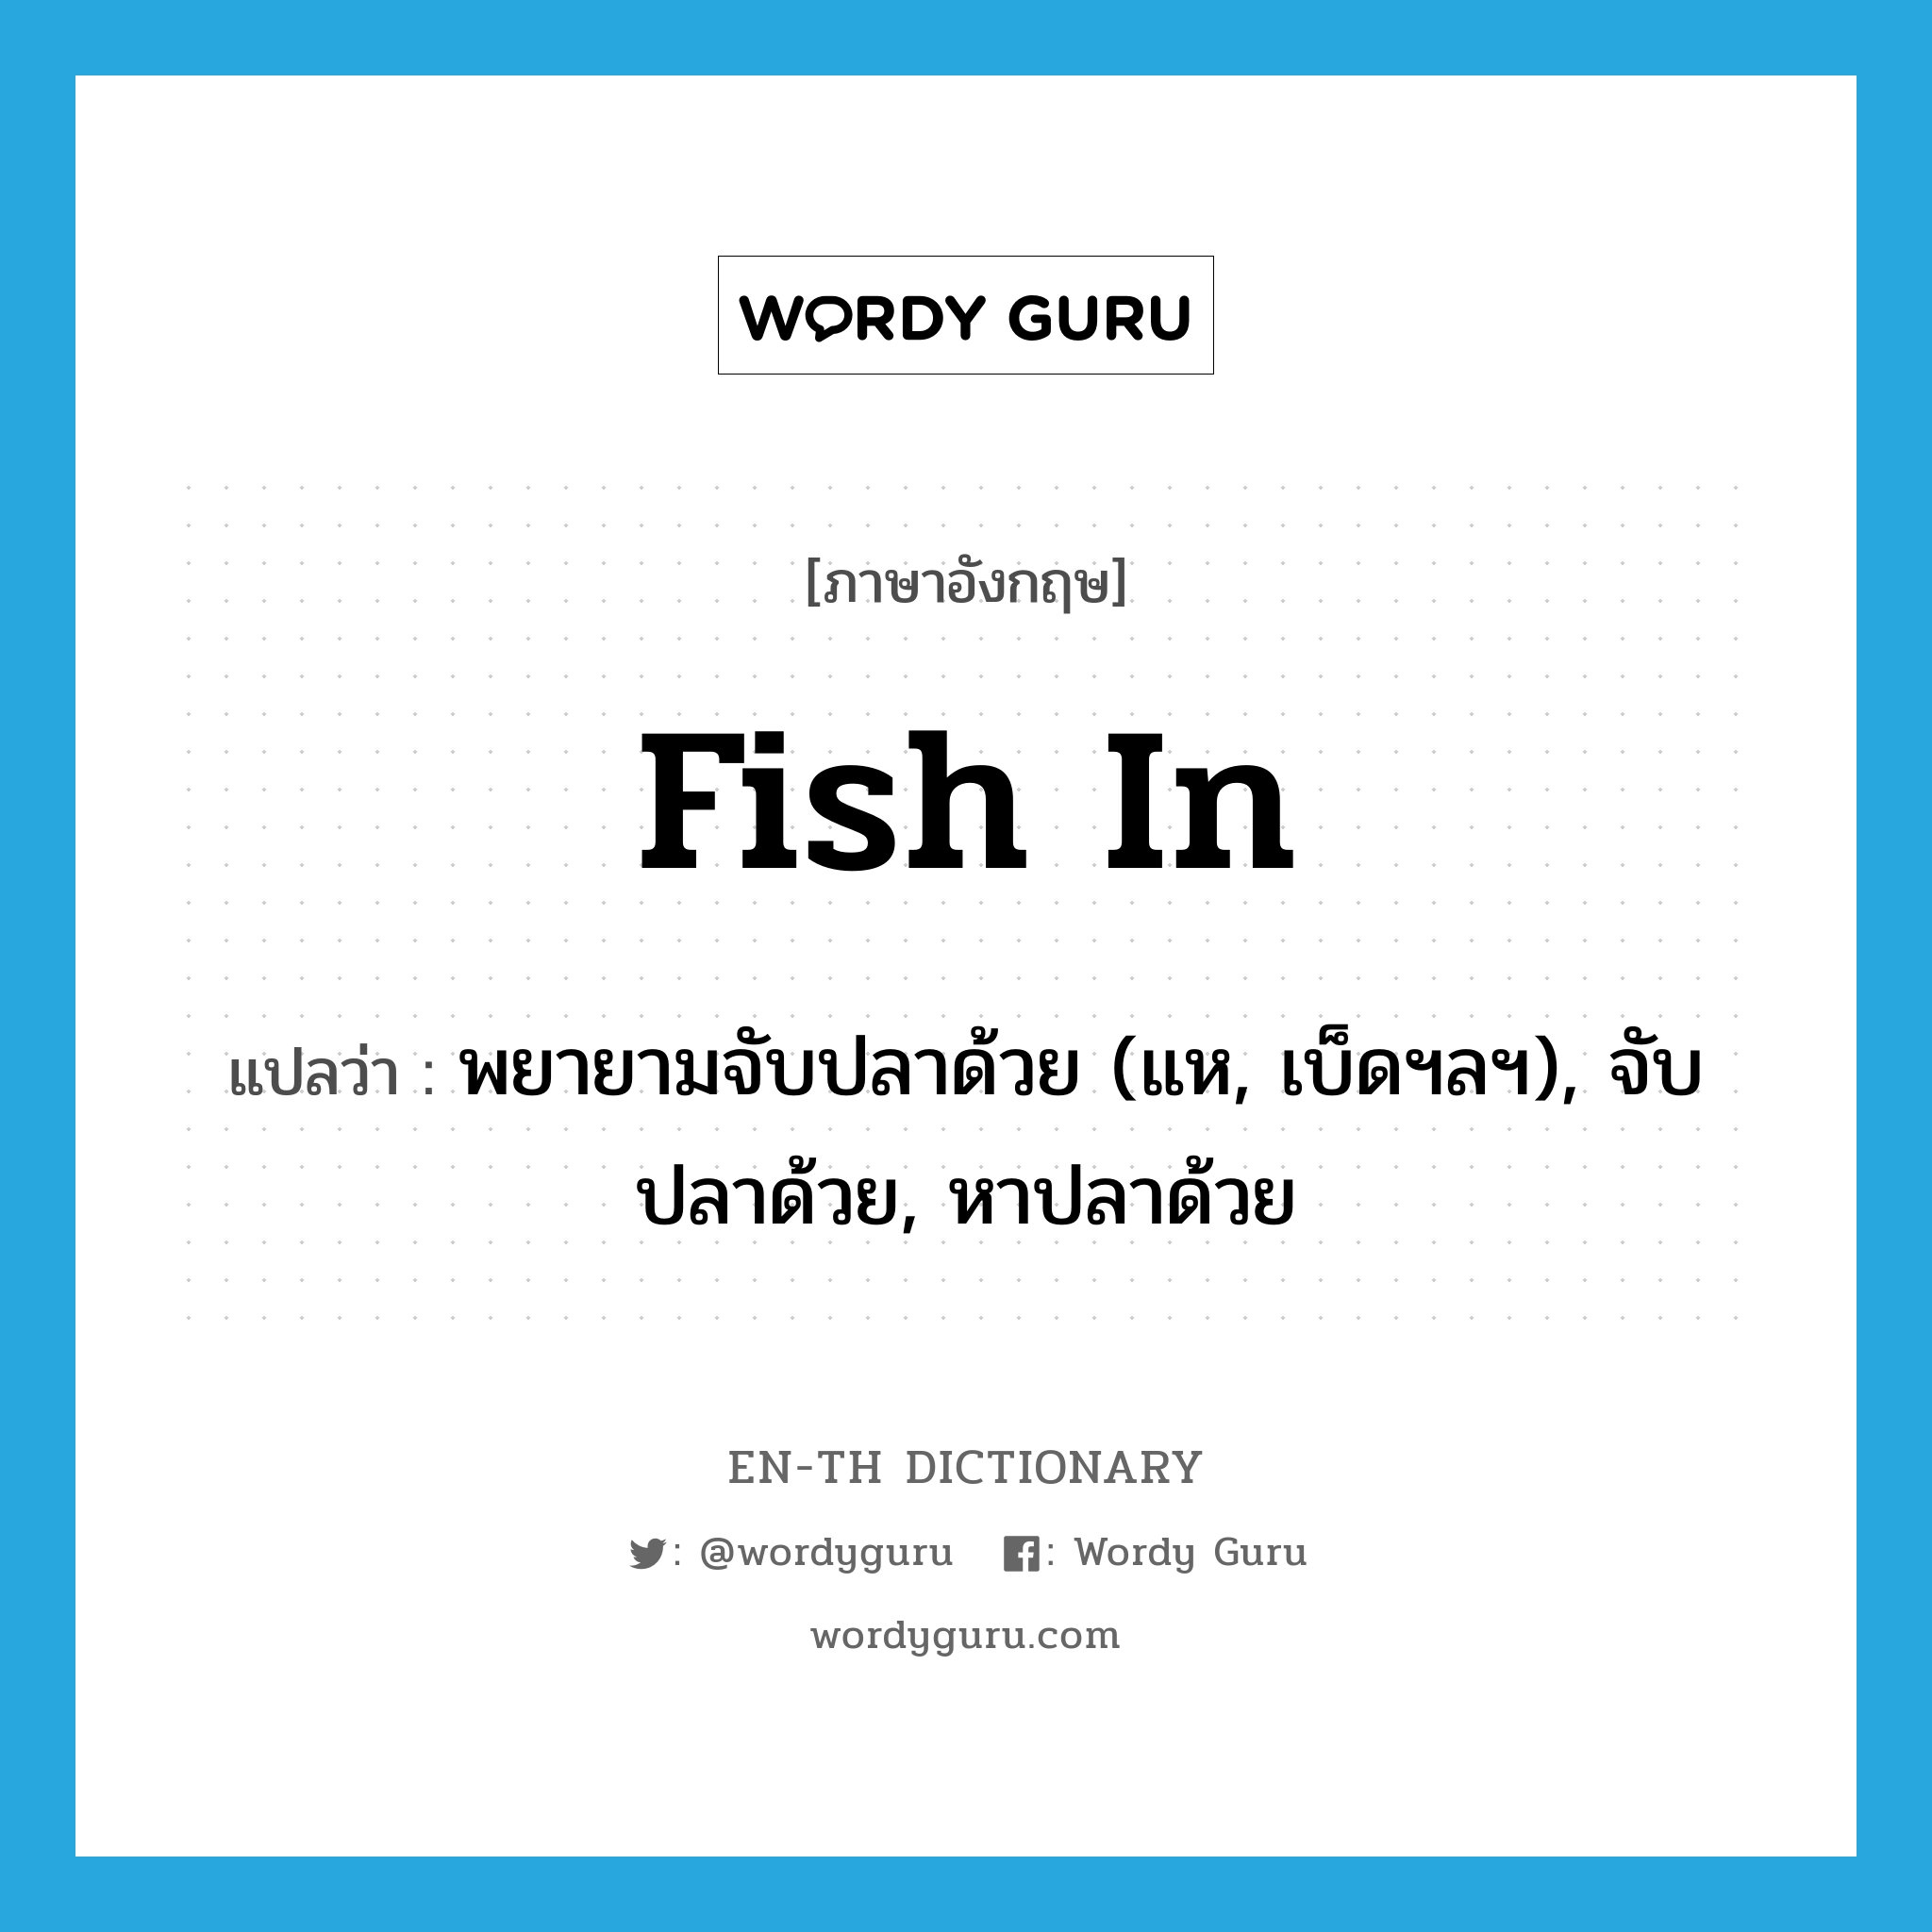 พยายามจับปลาด้วย (แห, เบ็ดฯลฯ), จับปลาด้วย, หาปลาด้วย ภาษาอังกฤษ?, คำศัพท์ภาษาอังกฤษ พยายามจับปลาด้วย (แห, เบ็ดฯลฯ), จับปลาด้วย, หาปลาด้วย แปลว่า fish in ประเภท PHRV หมวด PHRV